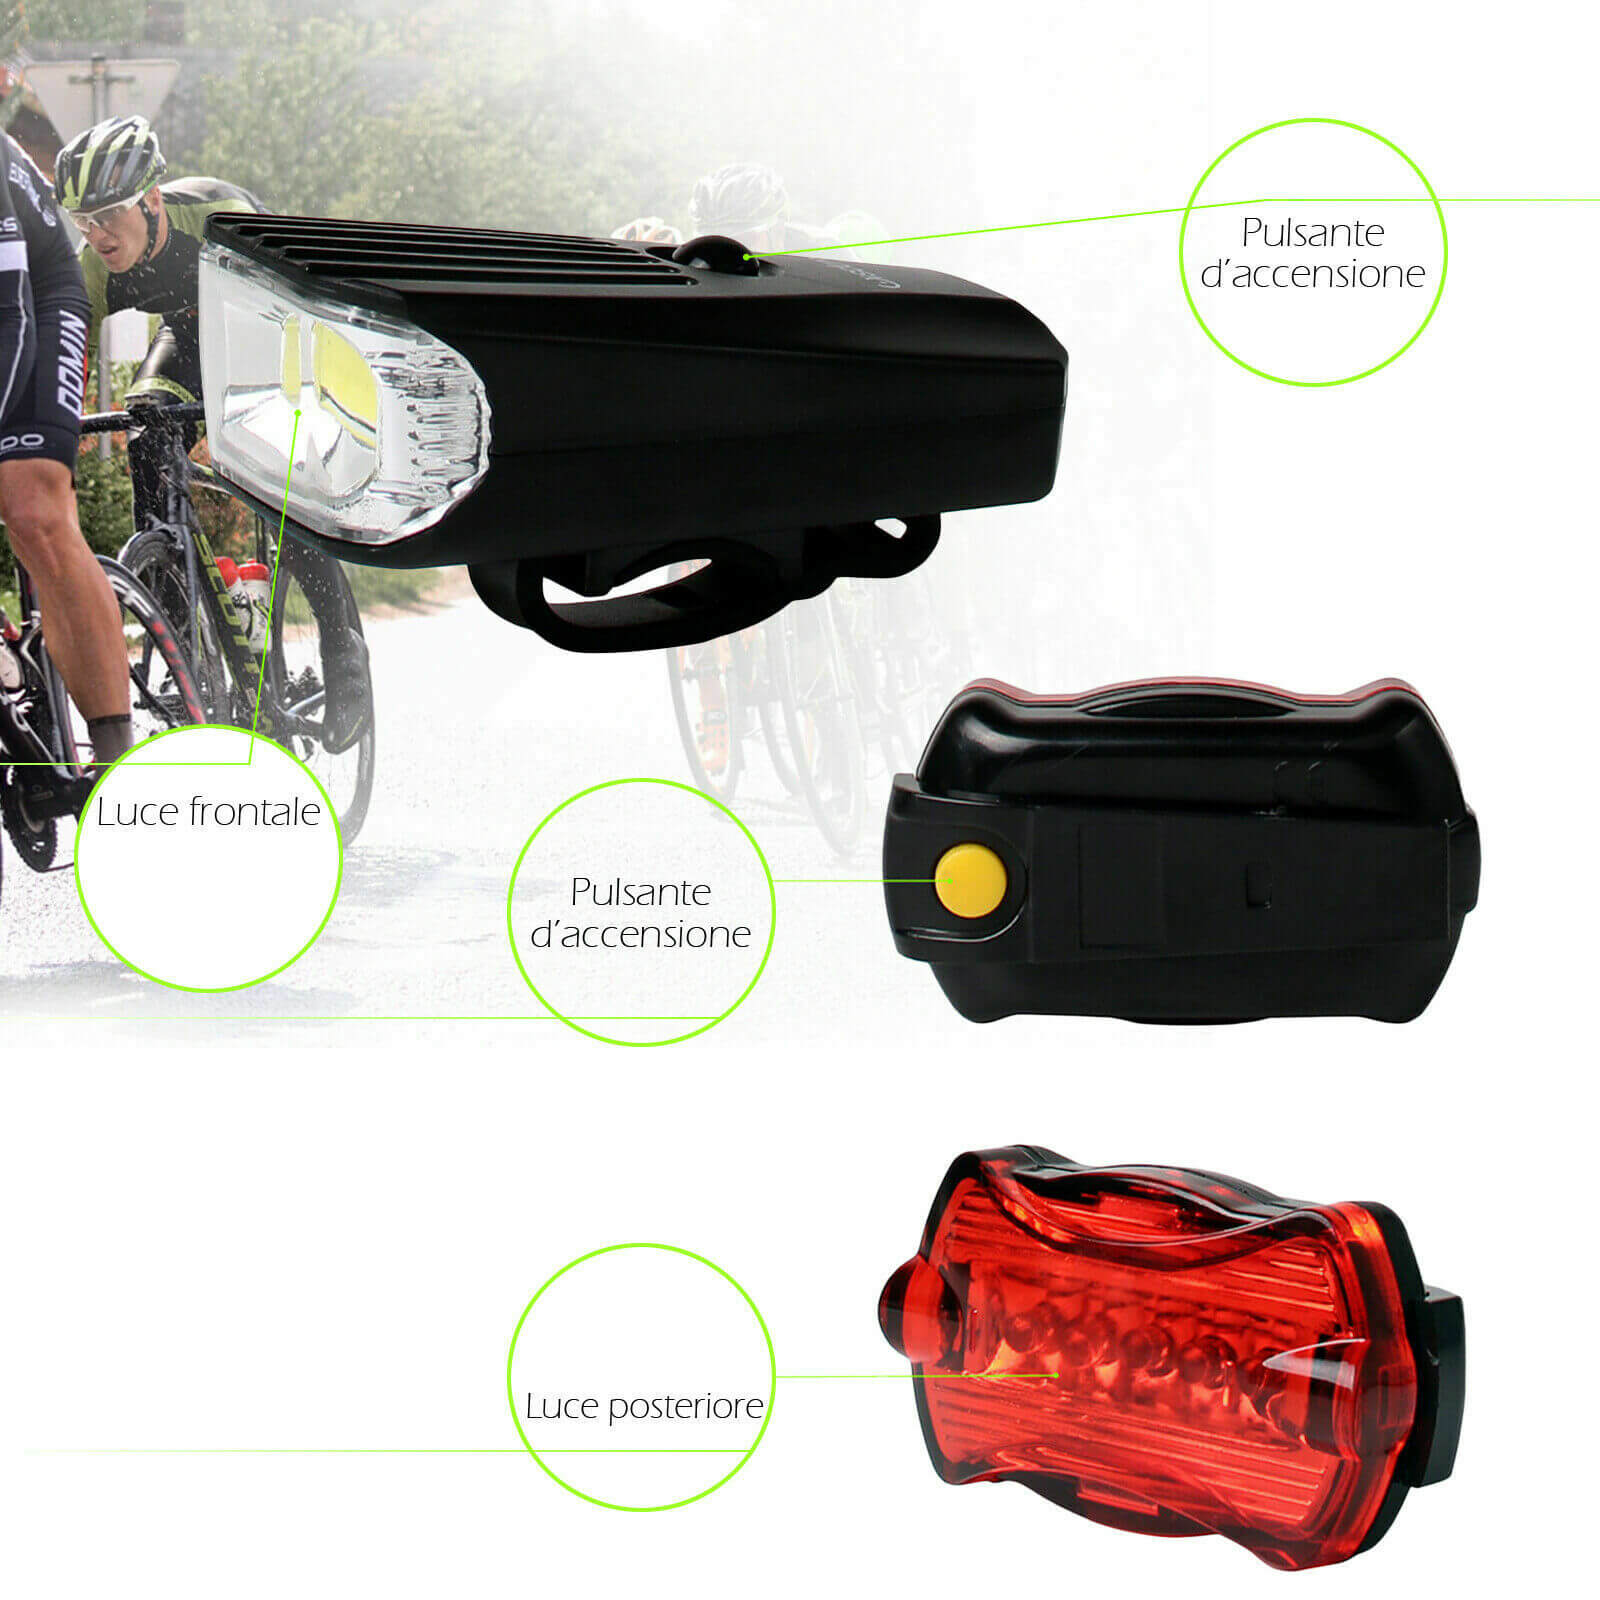 YSJJZRL 2Pack Luce per Bicicletta Anteriore e Posteriore in Silicone LED Set di luci per Bici batterie Incluse Faro e fanale Posteriore per Bici Impermeabili per Il Ciclismo Notturno 